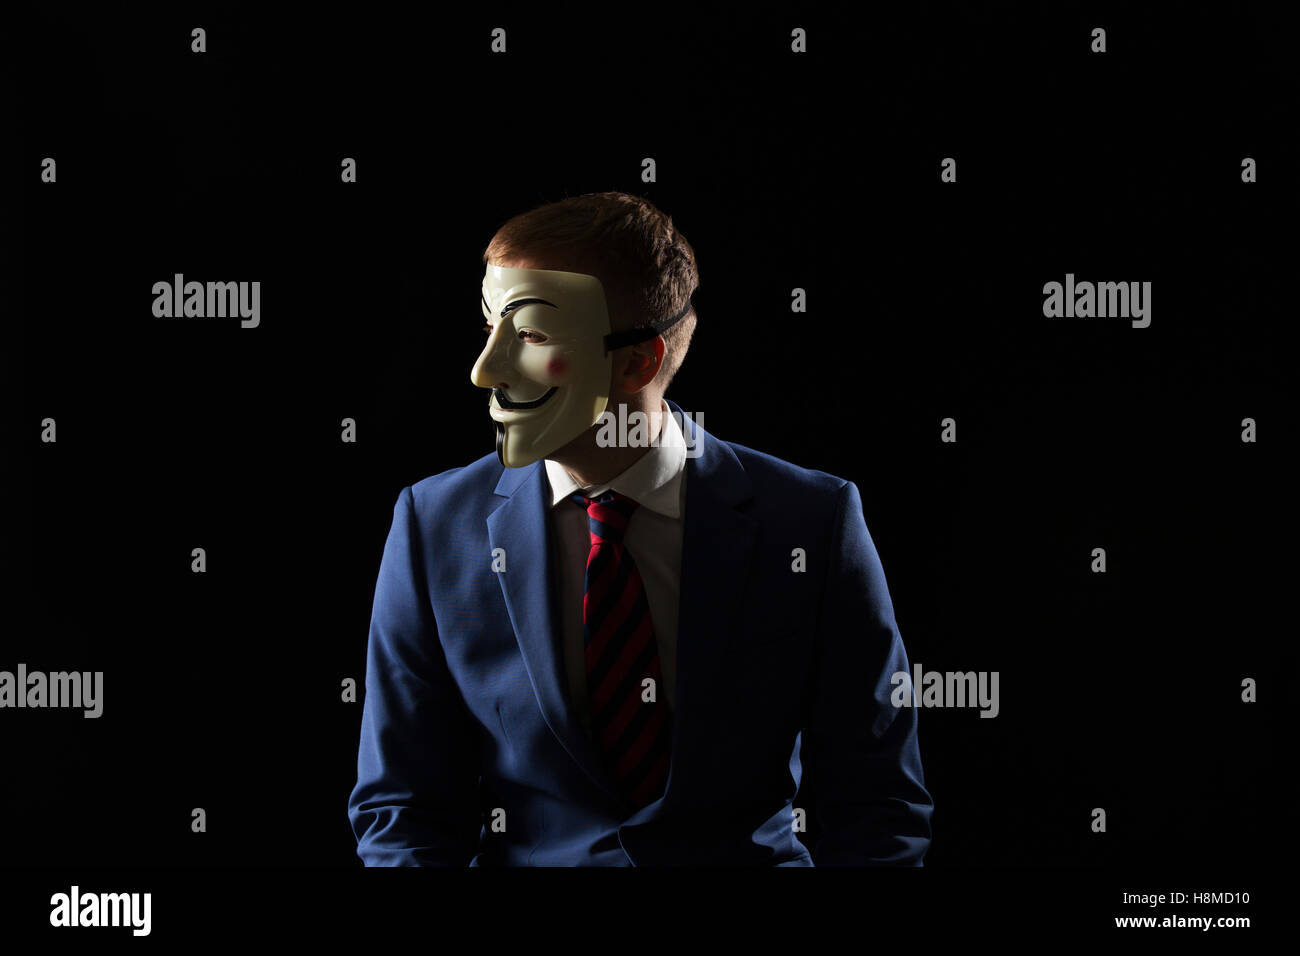 L'homme d'affaires sous le masque déguisement être anonyme et dire qu'il est un hacker ou anarchistes Banque D'Images